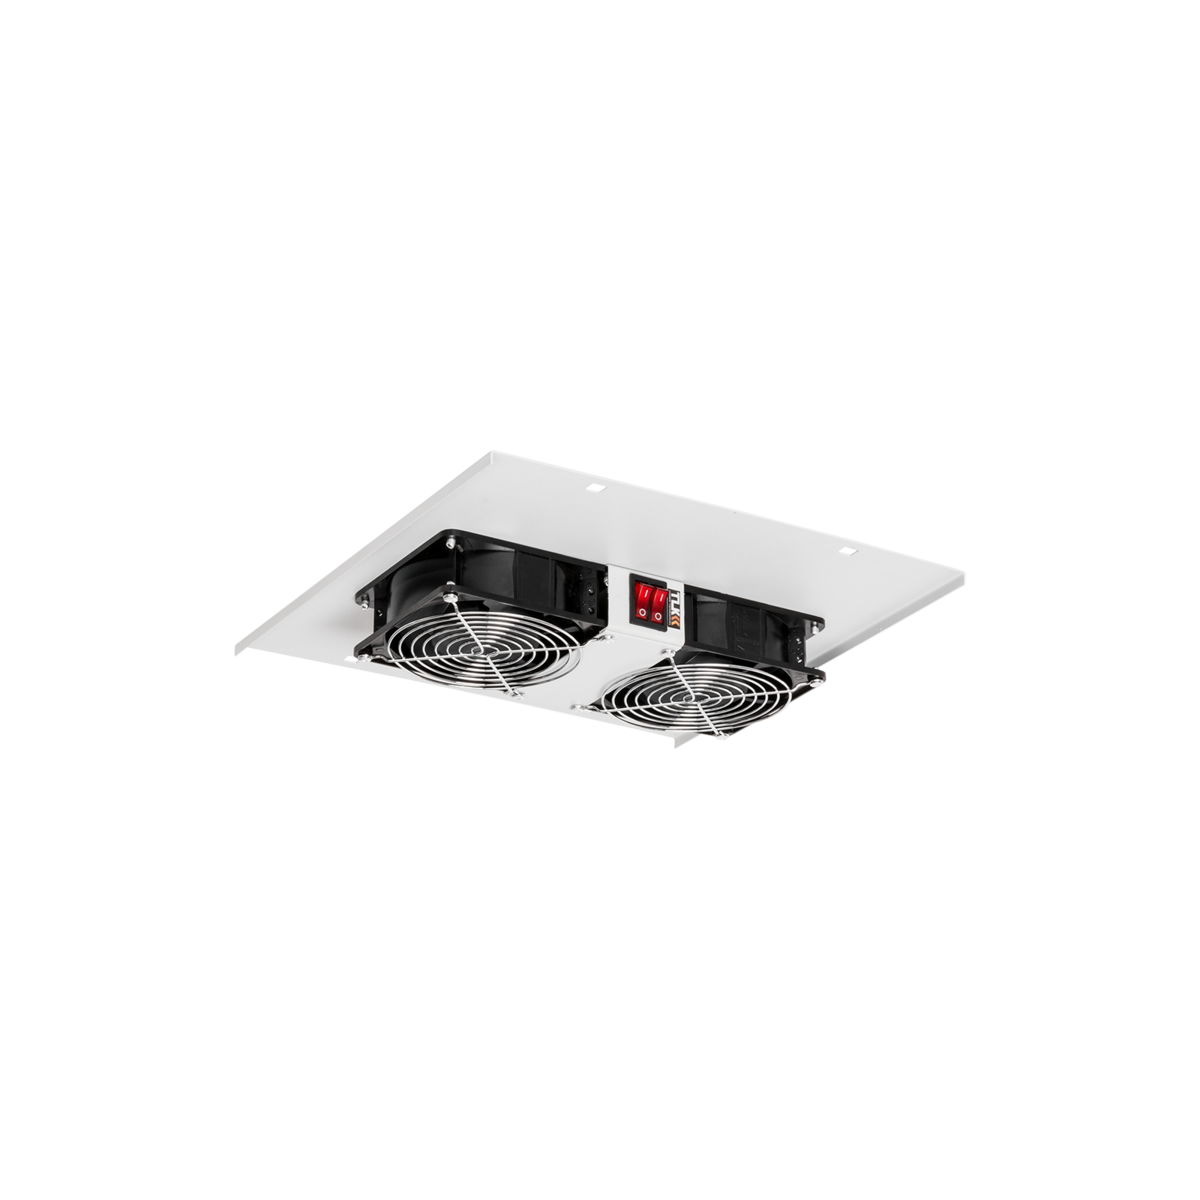 Вентиляторный блок TLK на 2 вентилятора для  шкафов TFI-R всех глубин и TWI-R с глубинами 450 и 600мм, серый